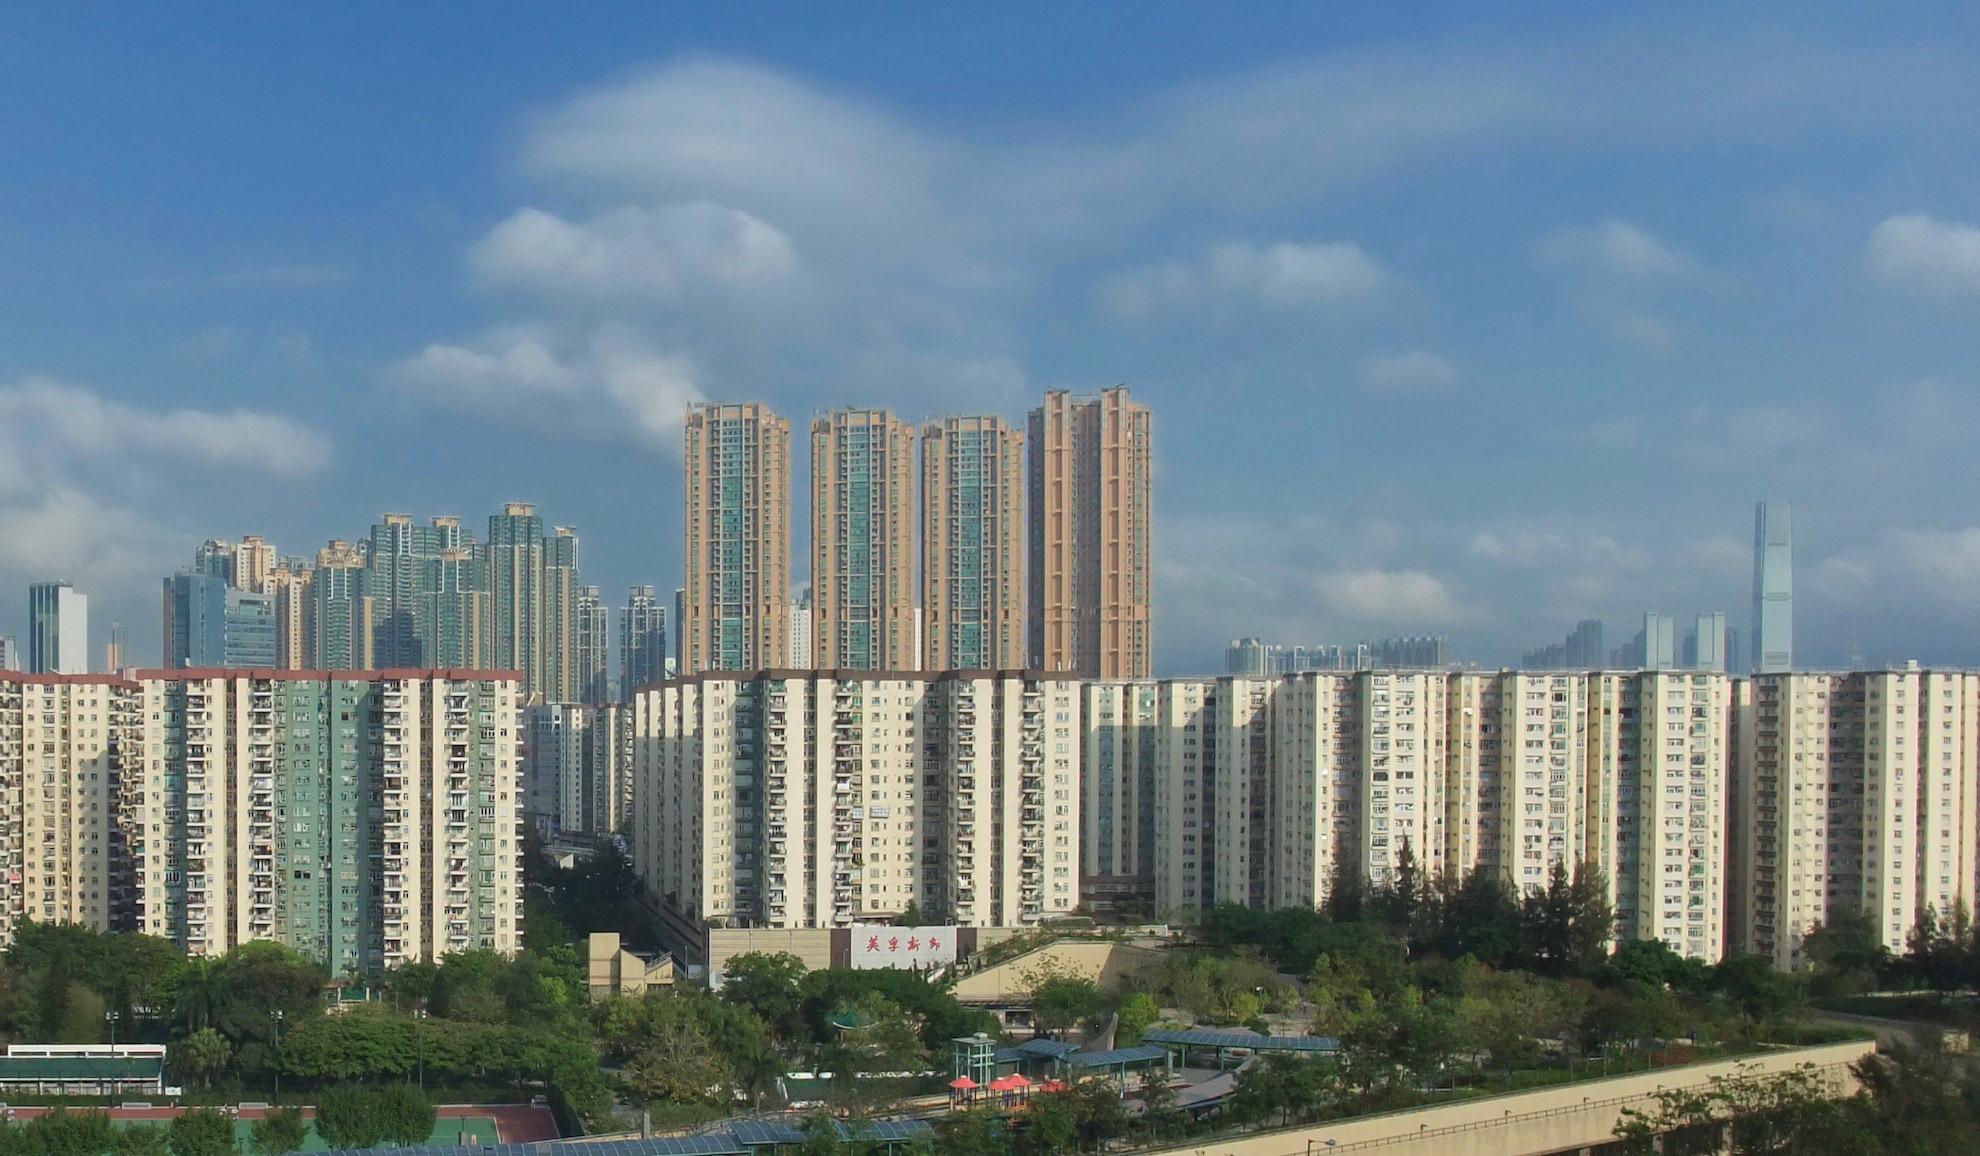 Mei Foo Sun Chuen private housing estate